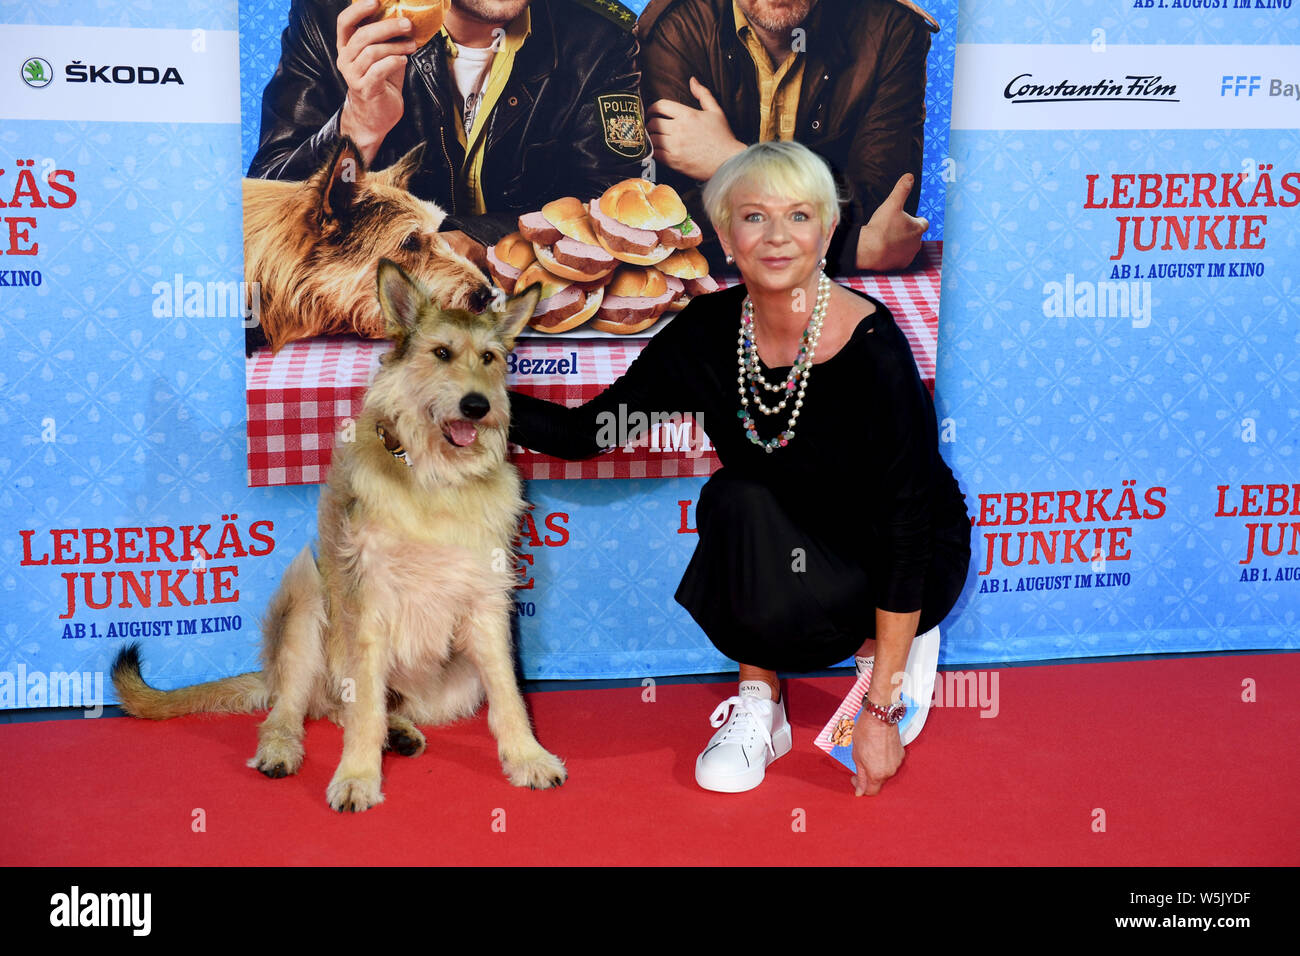 München, Deutschland. 29. Juli, 2019. Der Autor Rita Falk und der film Hund  Joker stehen auf dem roten Teppich bei der Premiere des Films LEBERKÄSJUNKIE  im Mathäser Filmpalast. Am 1. August, ein